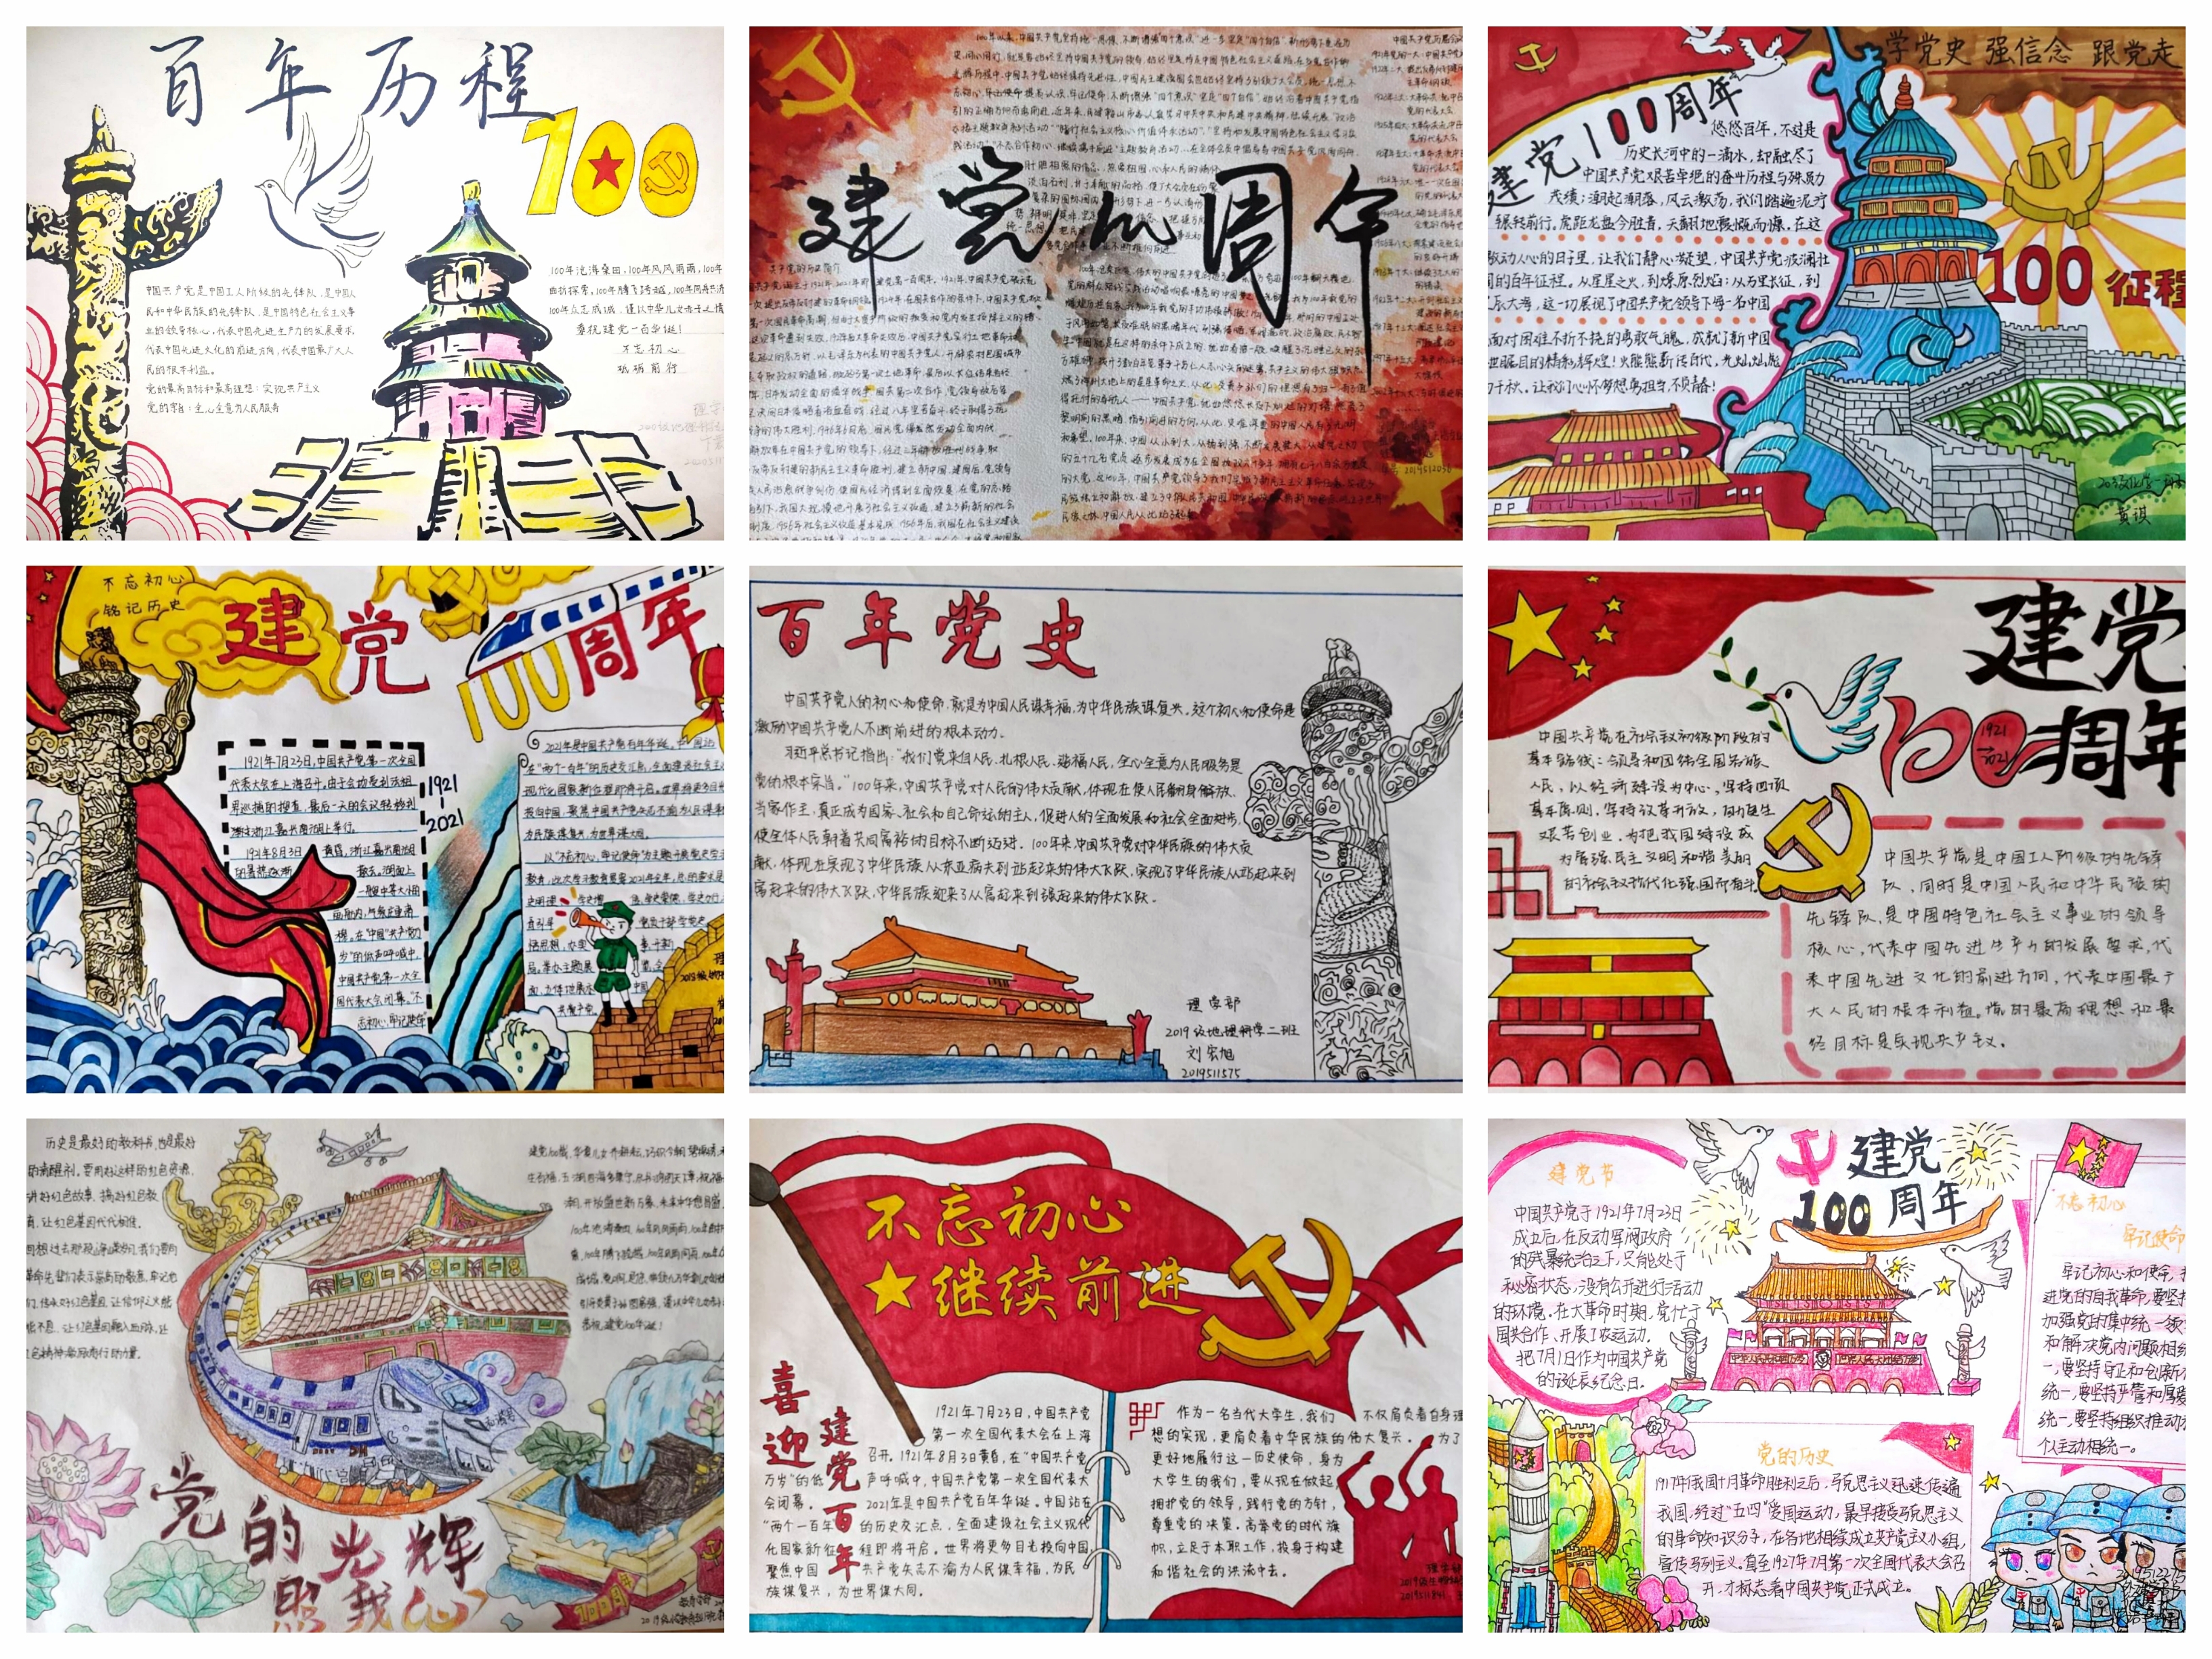 伟大贡献,理论成果,优良传统为主题,以手抄报的形式歌颂中国共产党